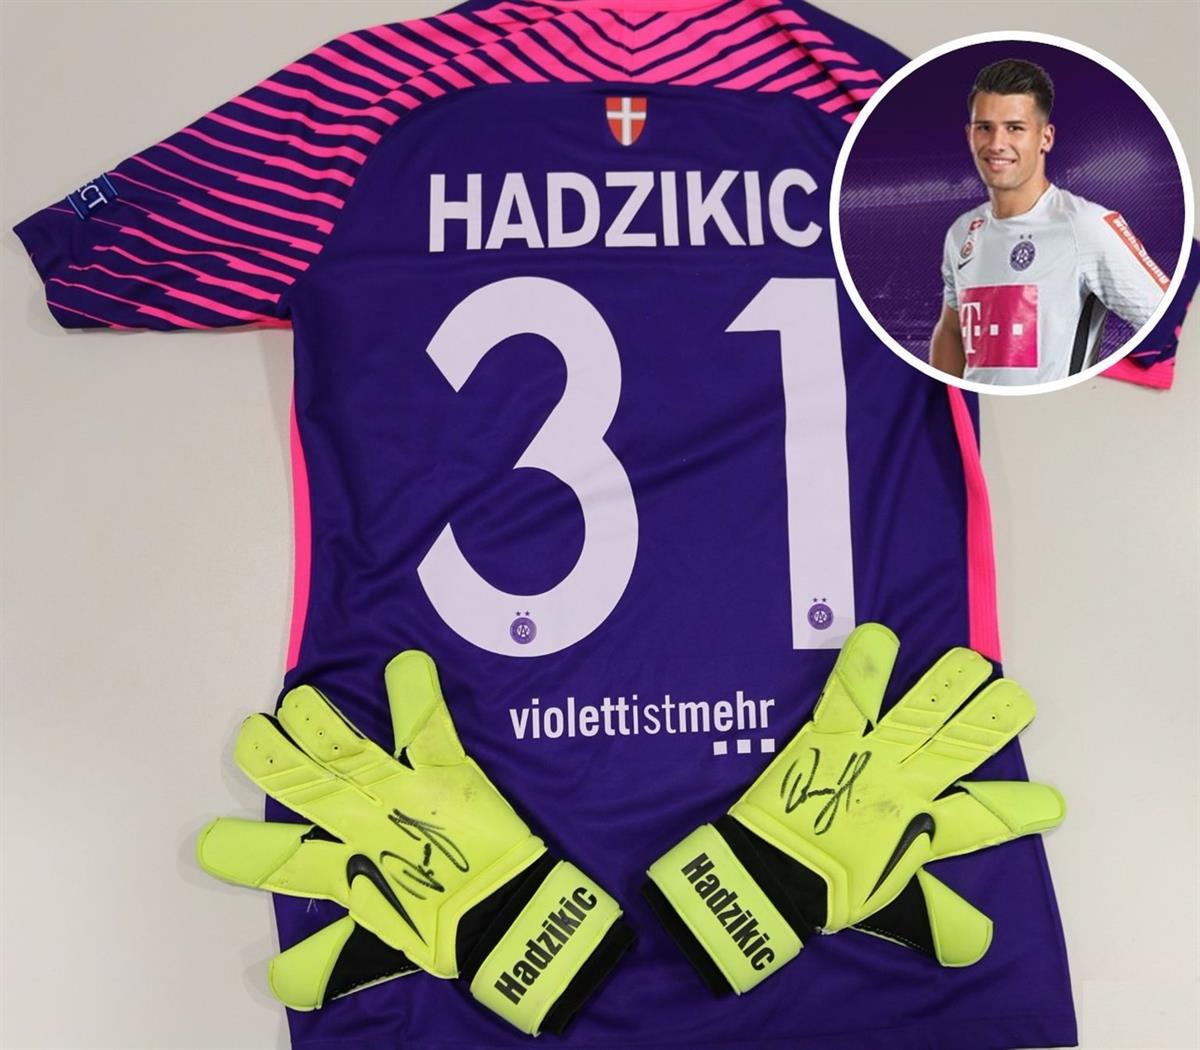 Osman Hadzikic - Trikot und Handschuhe